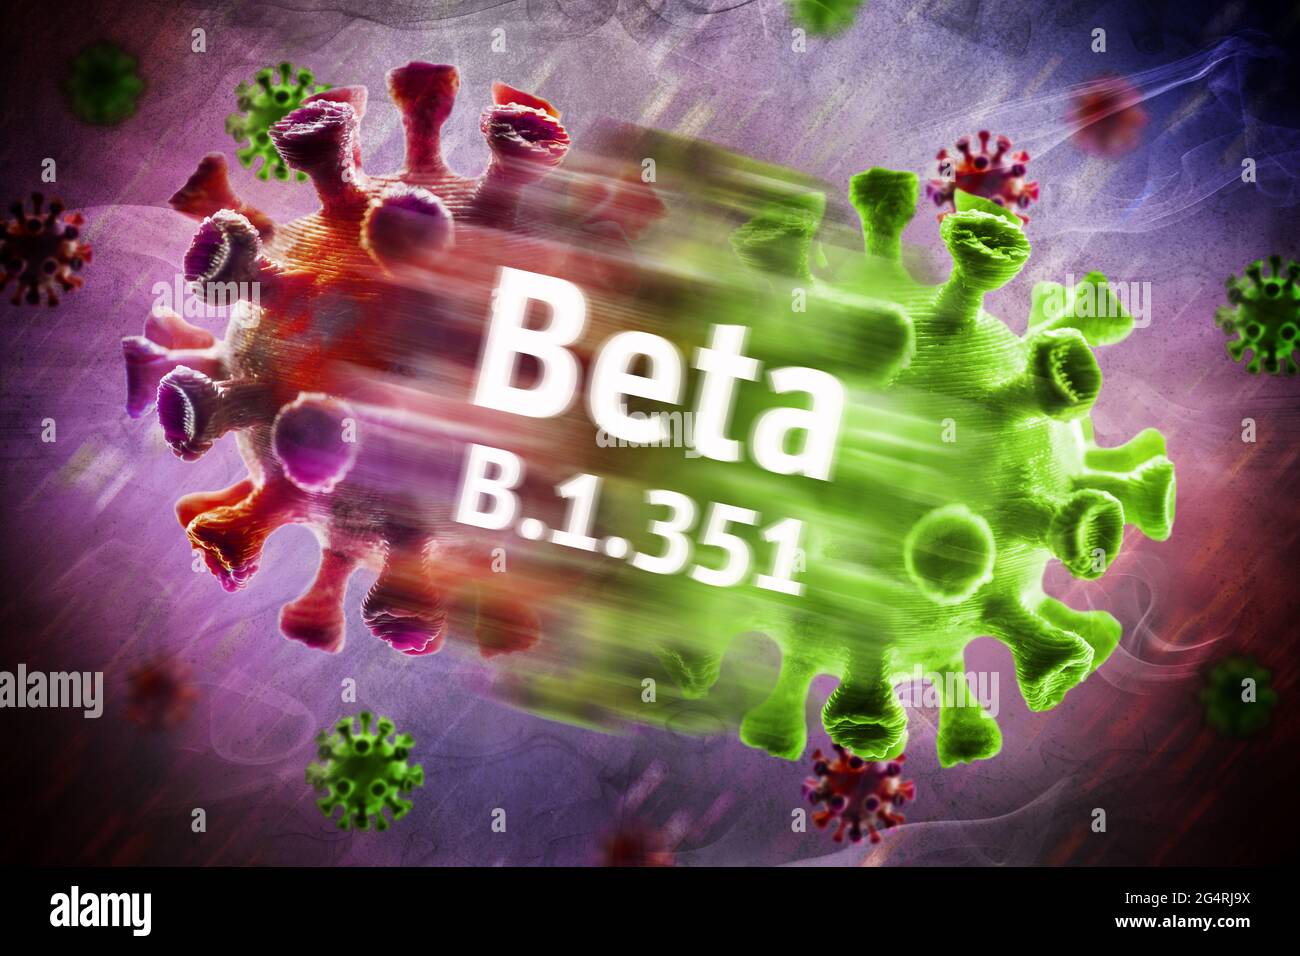 Corona viruses, beta variant B.1.351 Stock Photo